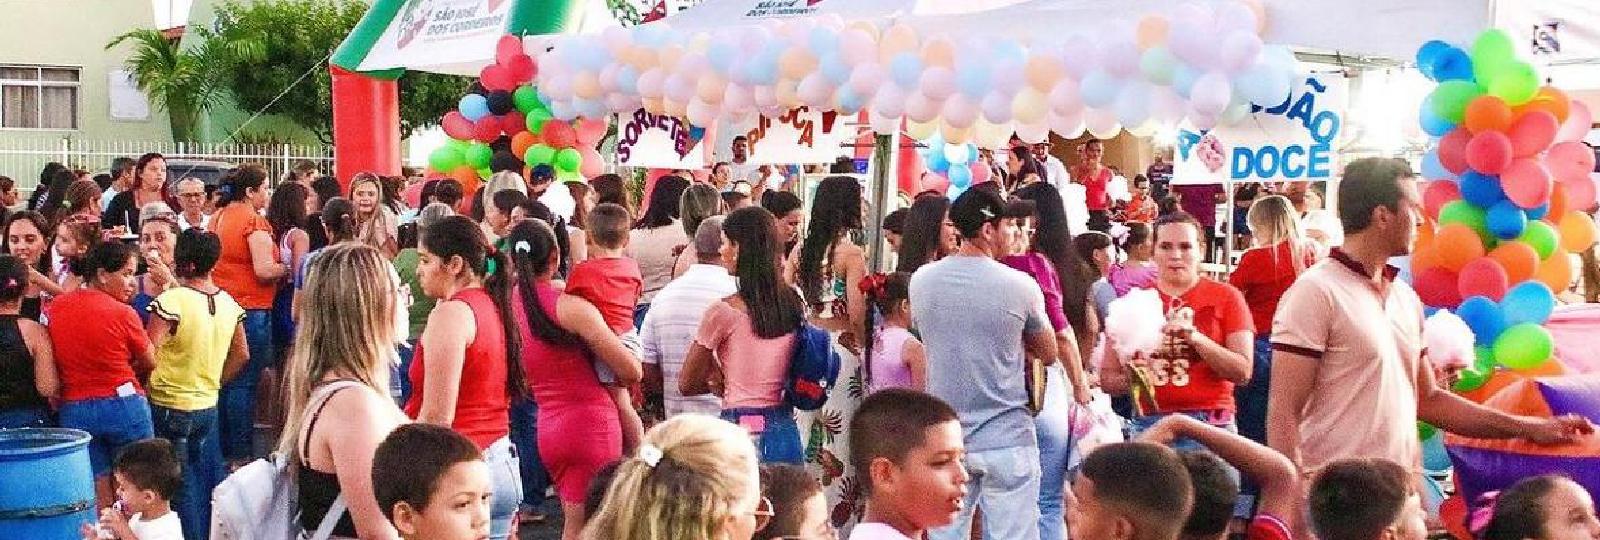 A Prefeitura Municipal de São José dos Cordeiros por meio da Secretaria de Desenvolvimento Humano e Assistência Social, realizou no dia 17/10 a tradicional Festa em alusão ao Dia das Crianças.